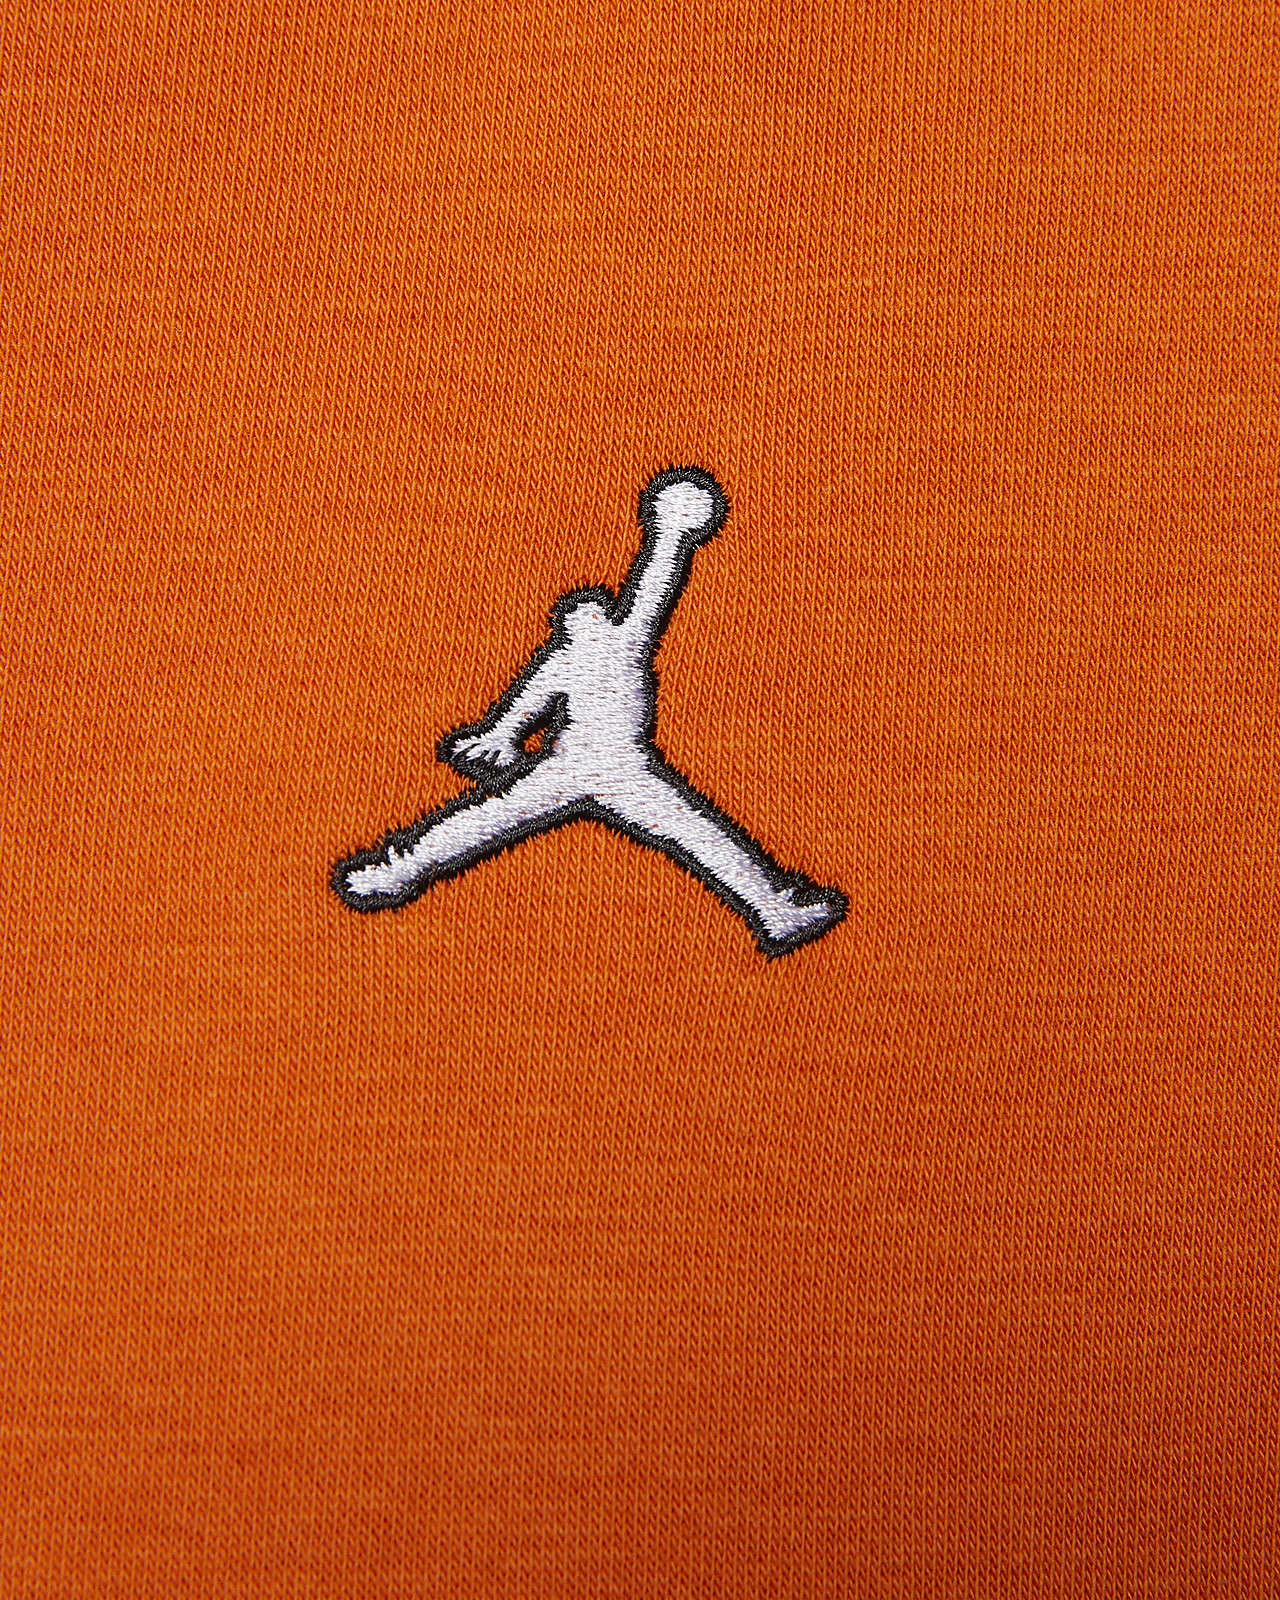 Nike Jordan Brooklyn Fleece Women's Pants (Plus Size). Nike.com